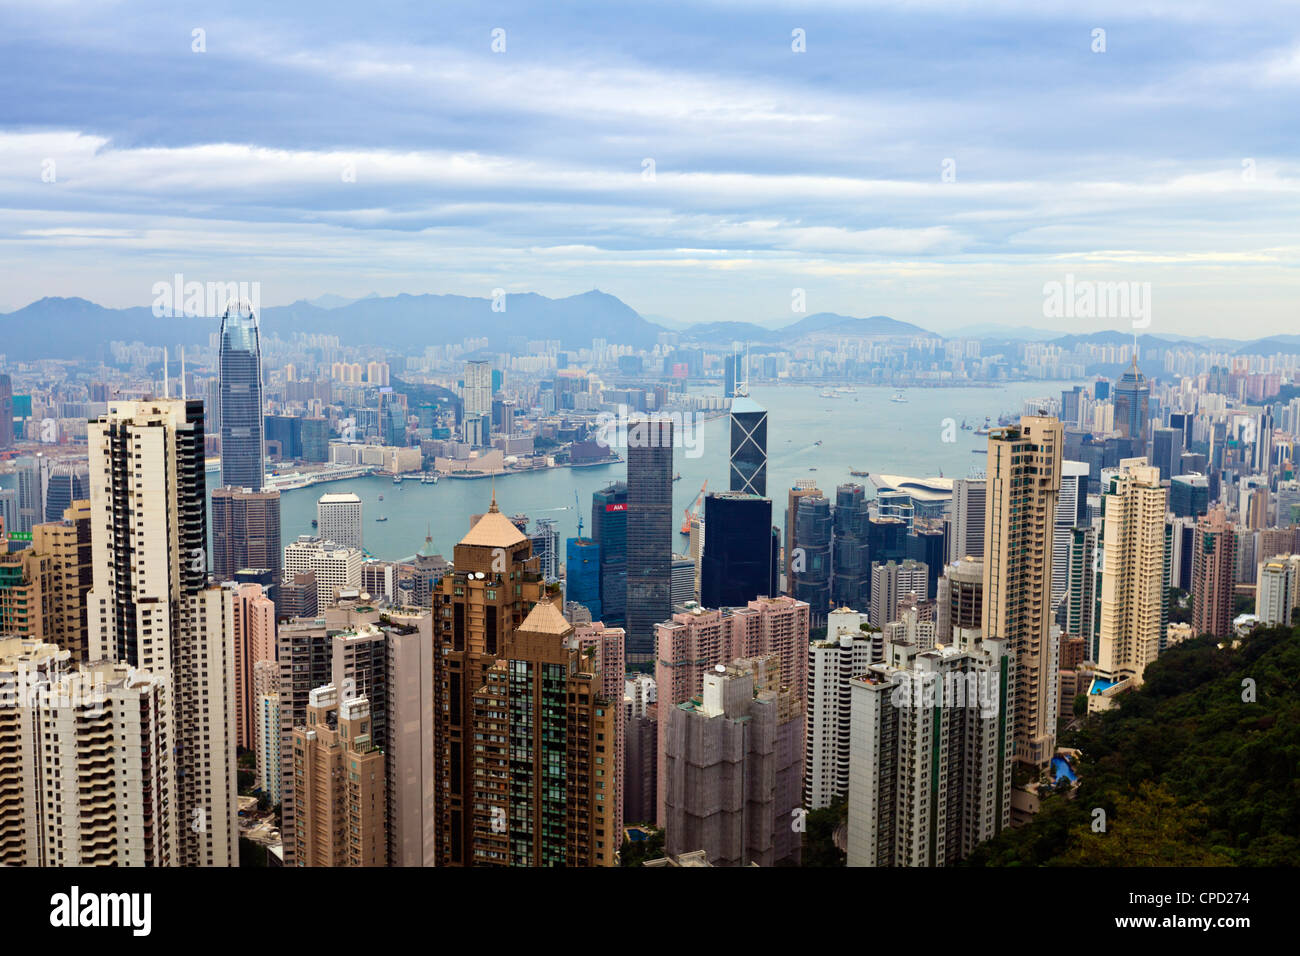 Hong Kong cityscape viewed from Victoria Peak, Hong Kong, China, Asia Stock Photo